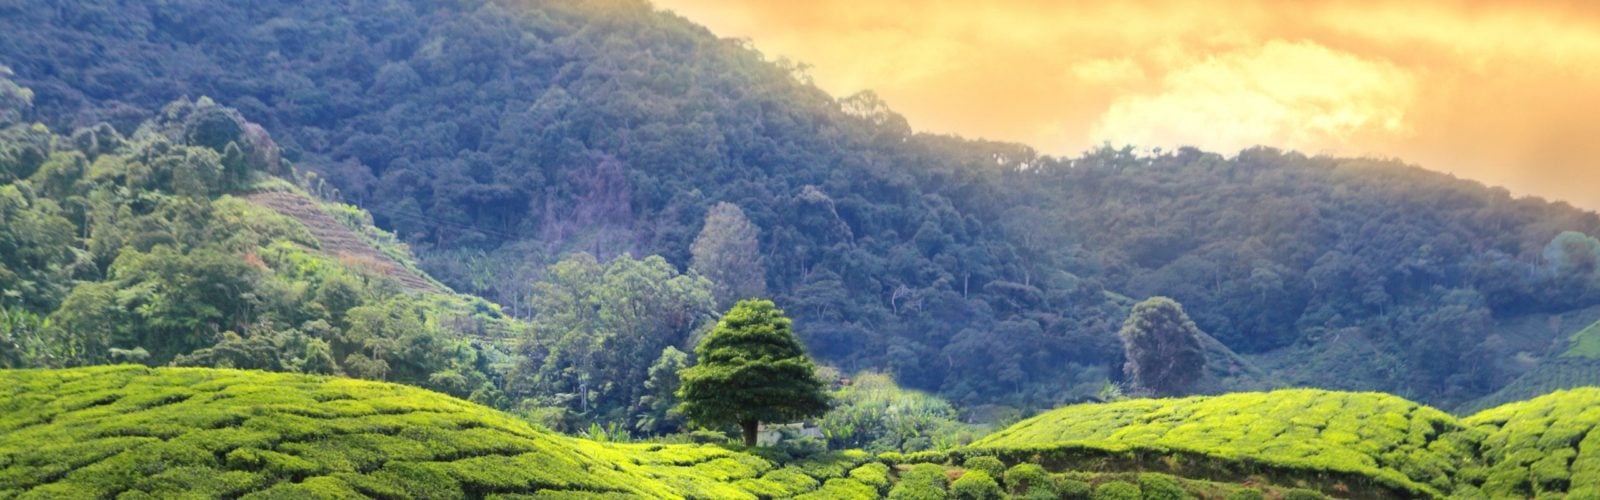 tea-plantations-sri-lanka-sunset